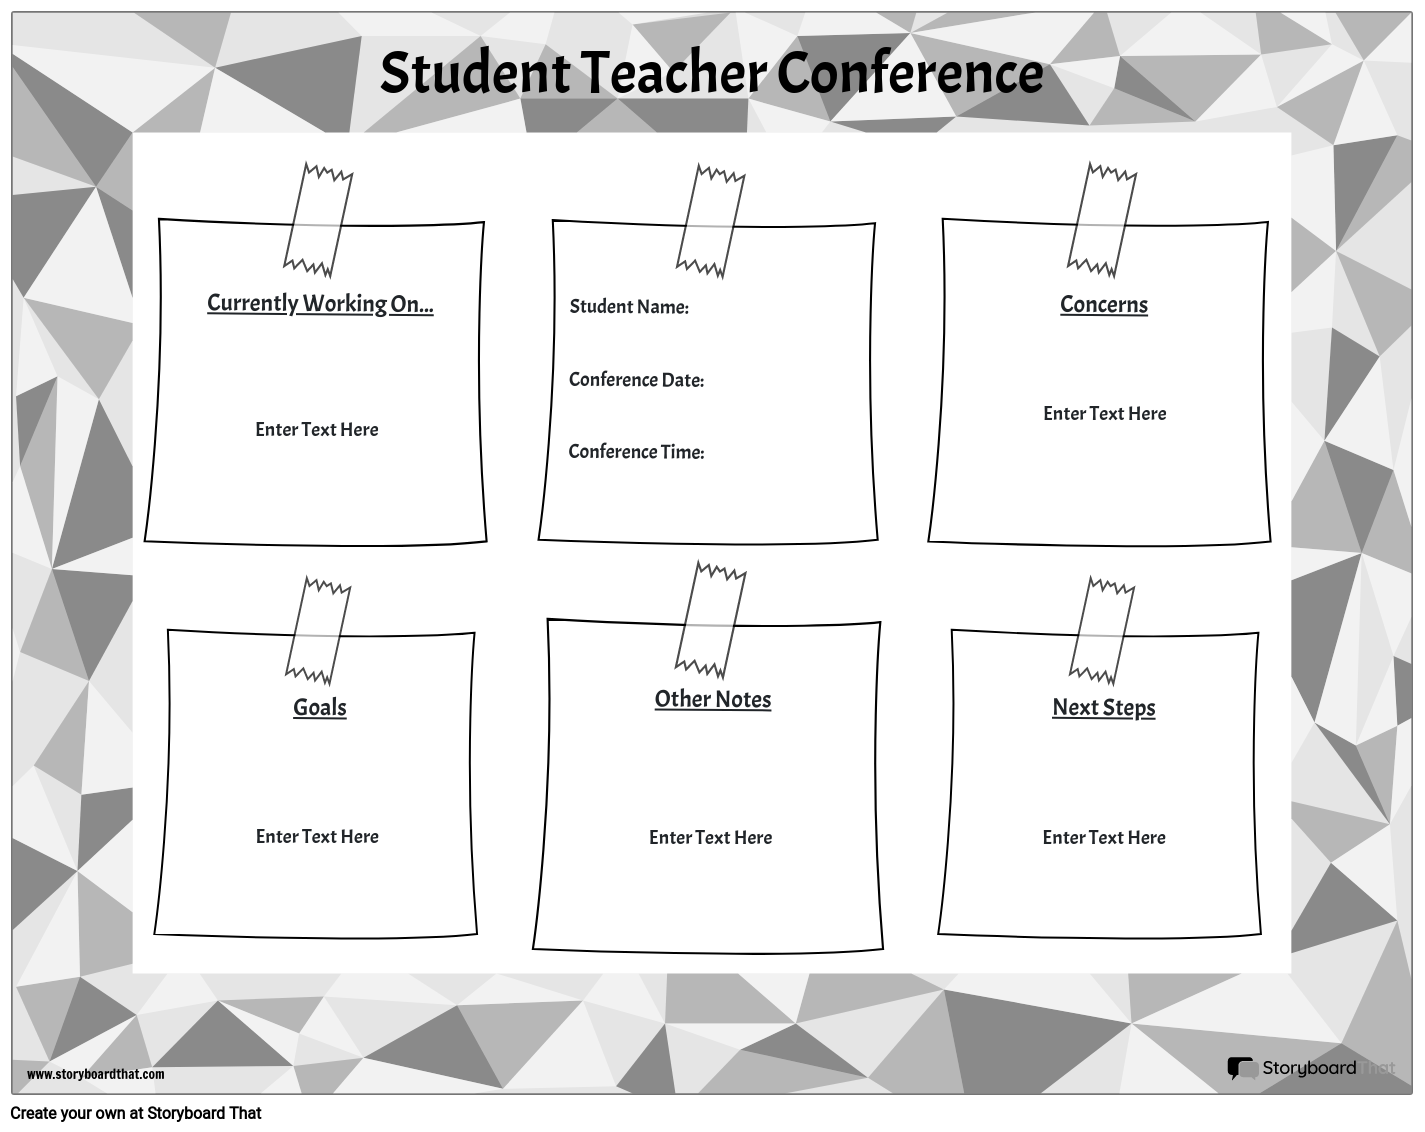 Konferenca Študentskih Učiteljev 6